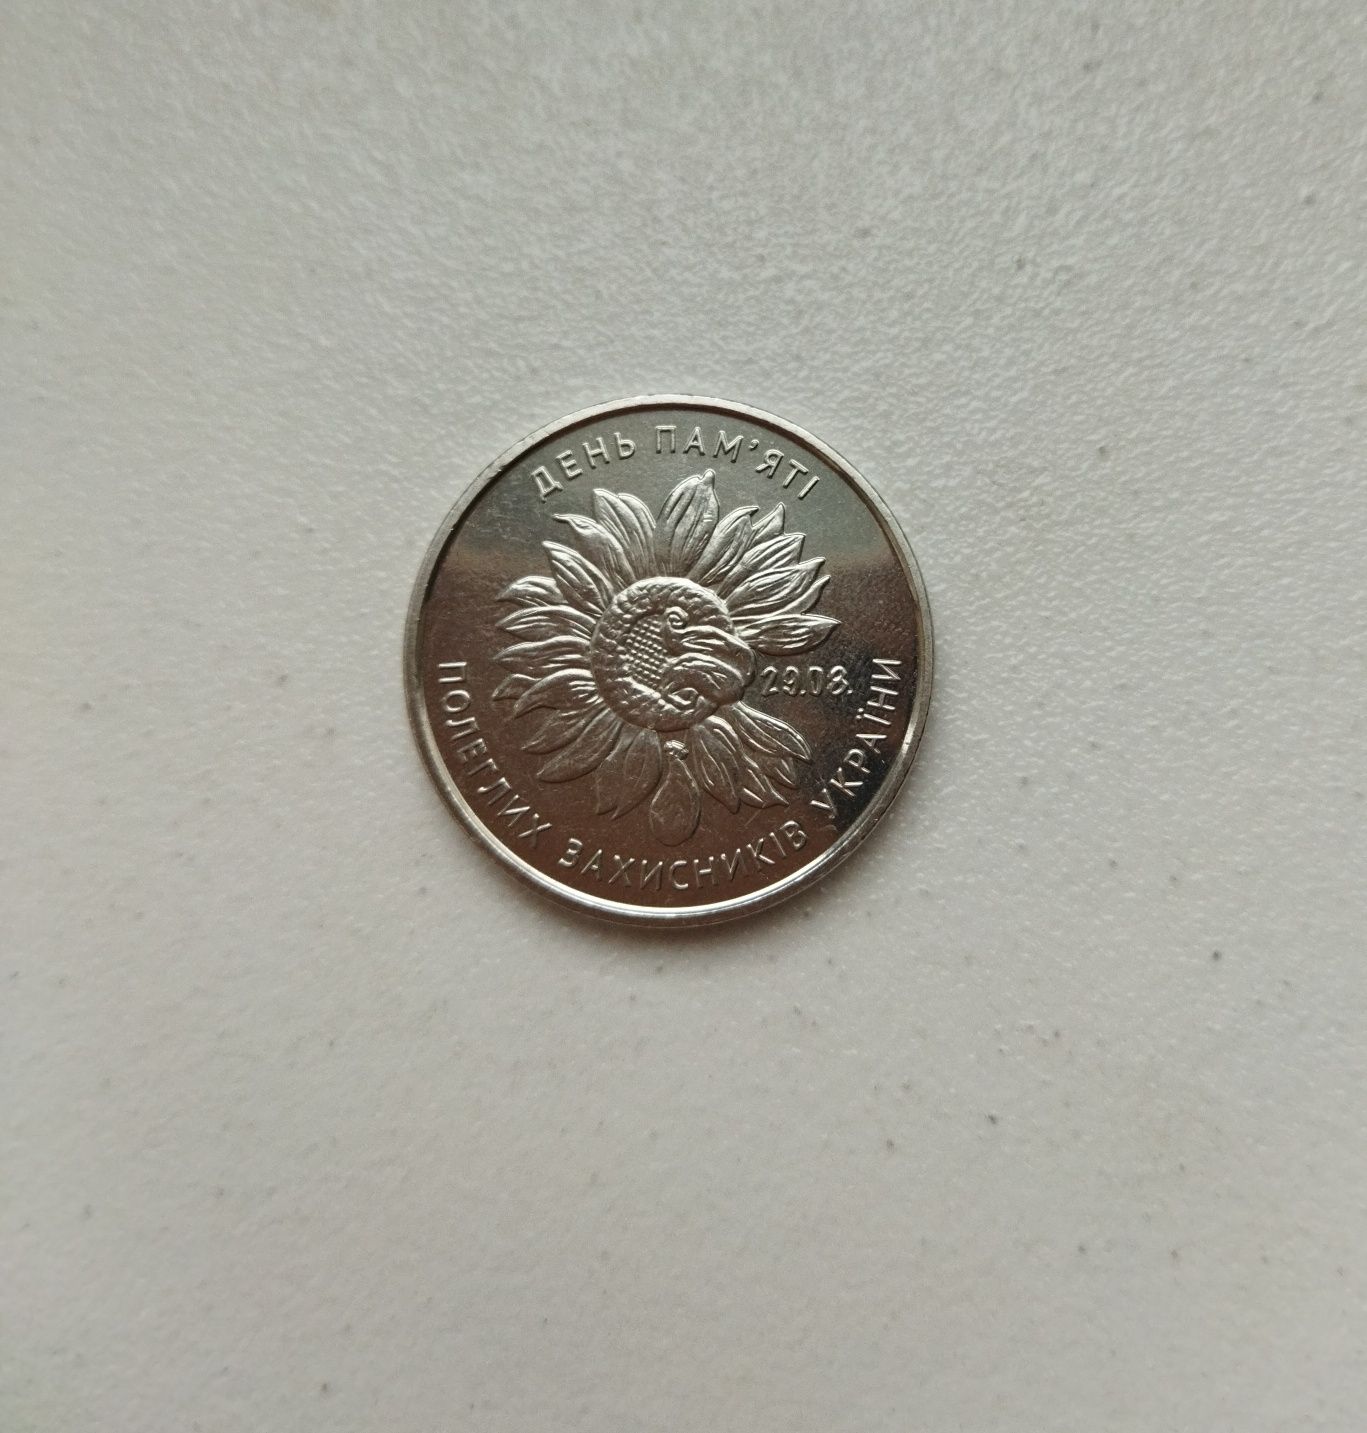 Рідкісна монета 10 грн